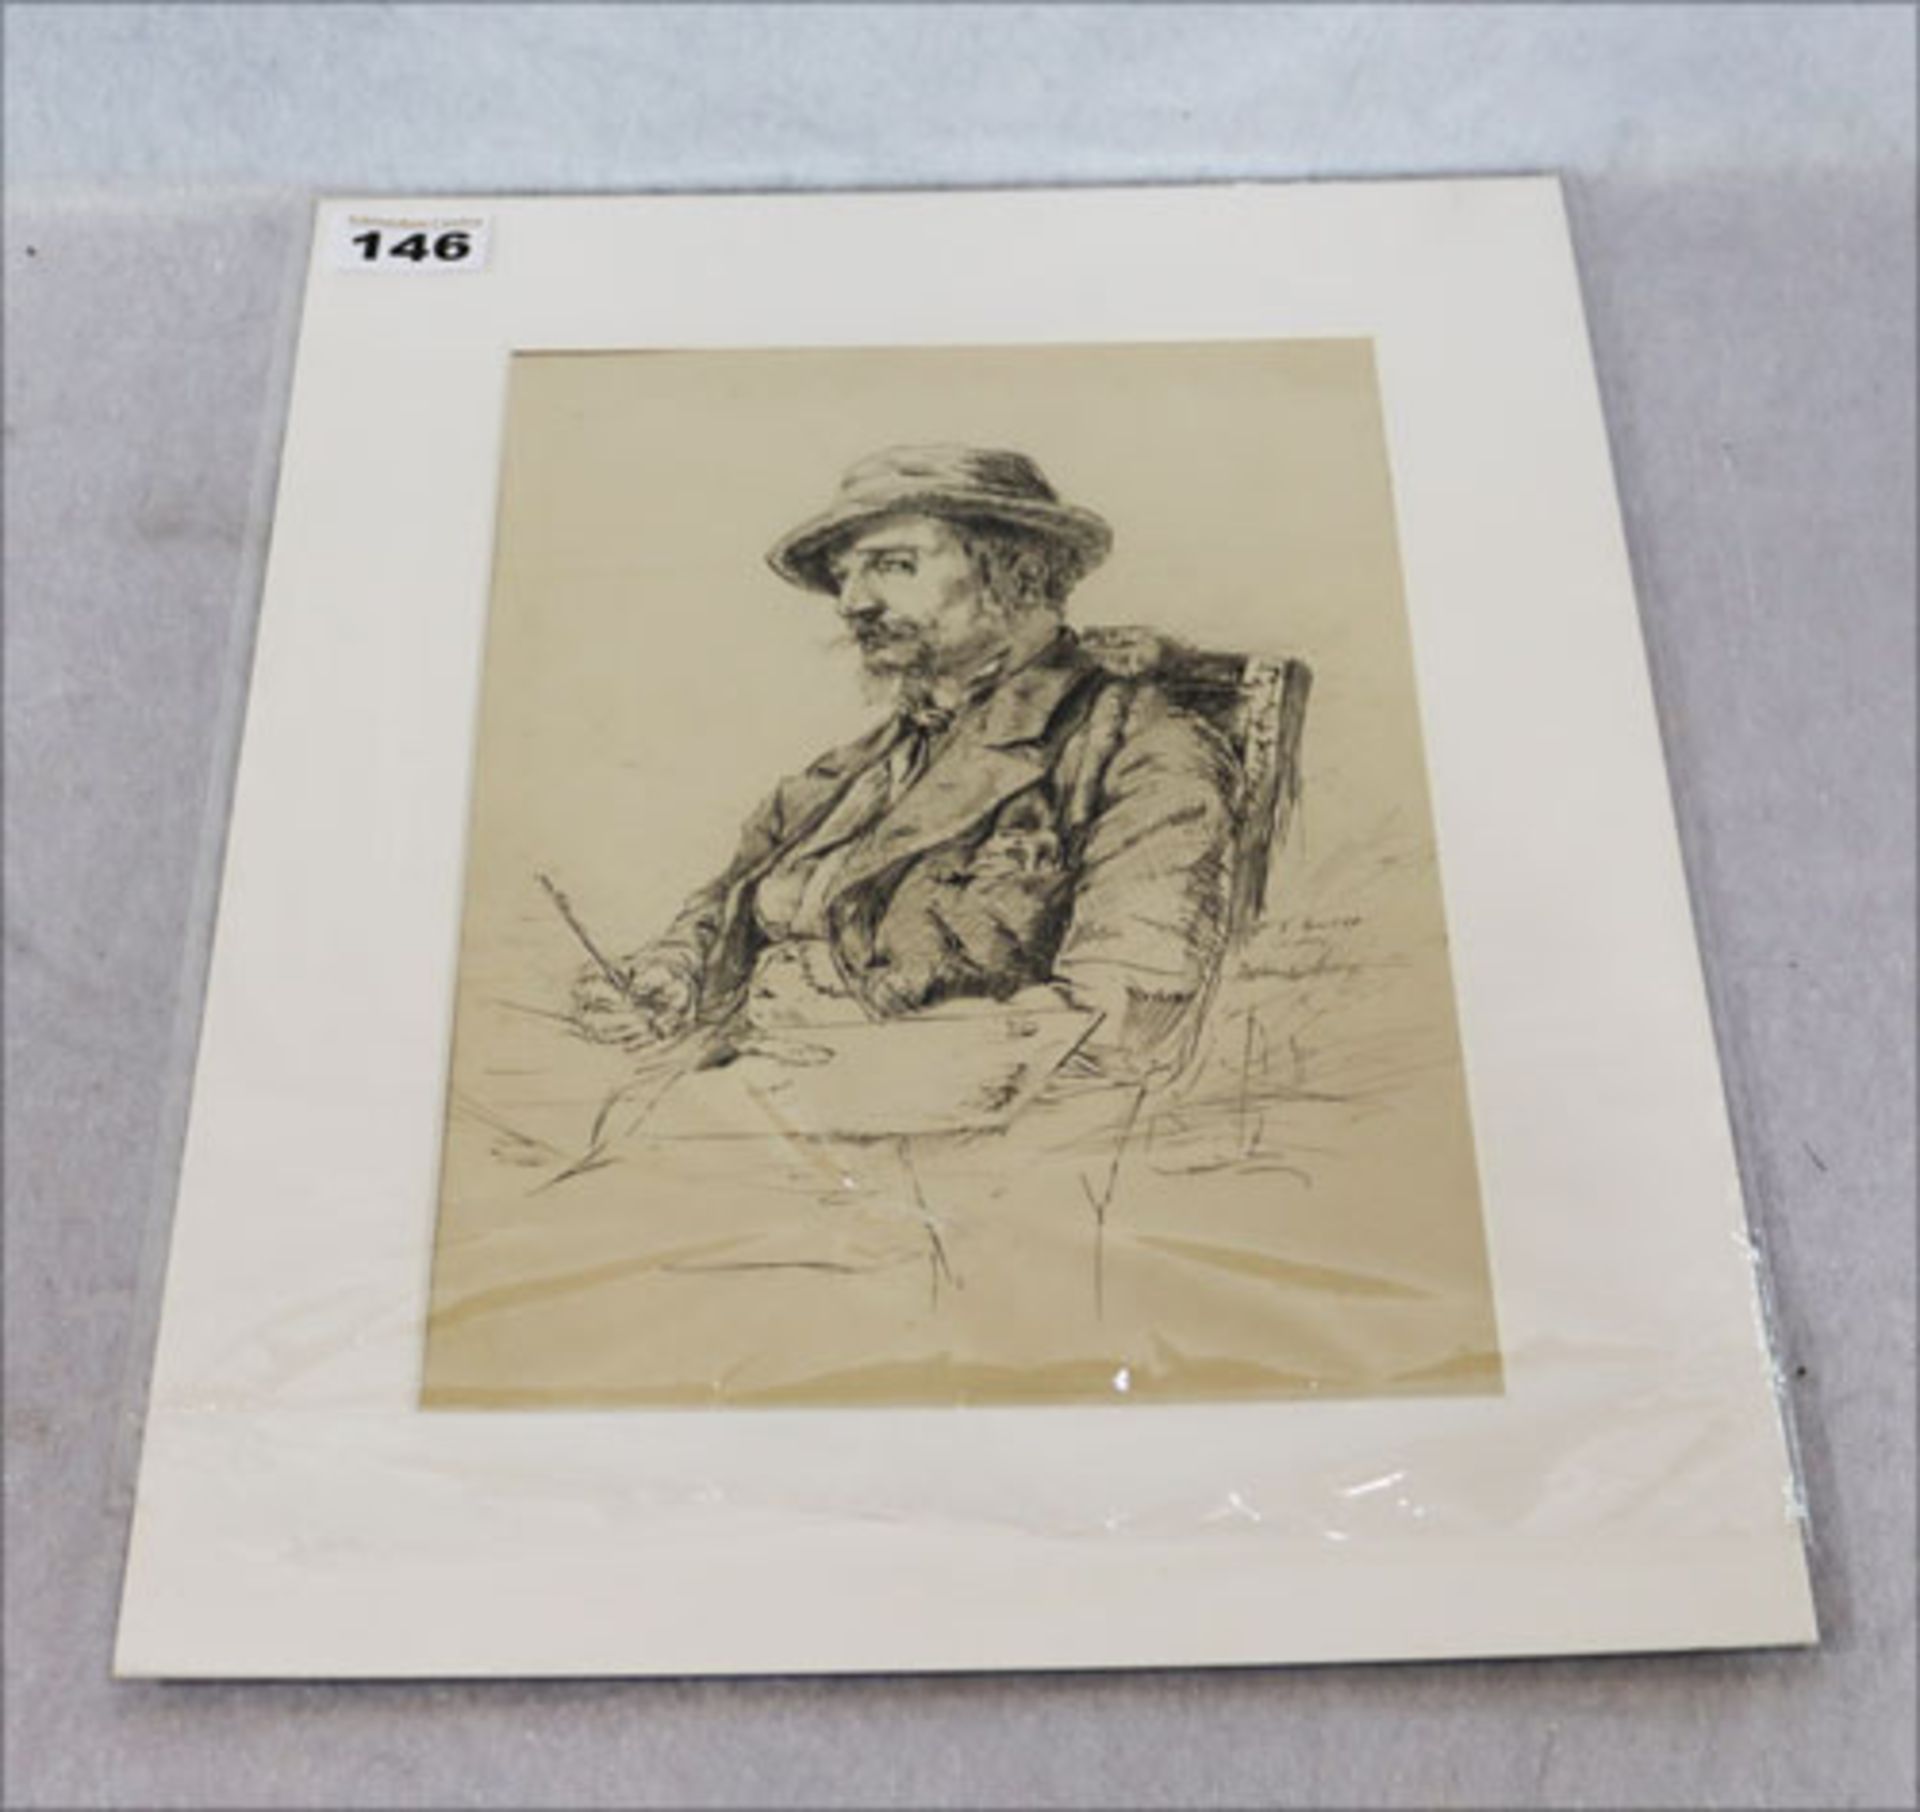 Feinste Federzeichnung 'Porträt des Maler Wuttke, * 1849 + 1927', datiert 1888 und signiert